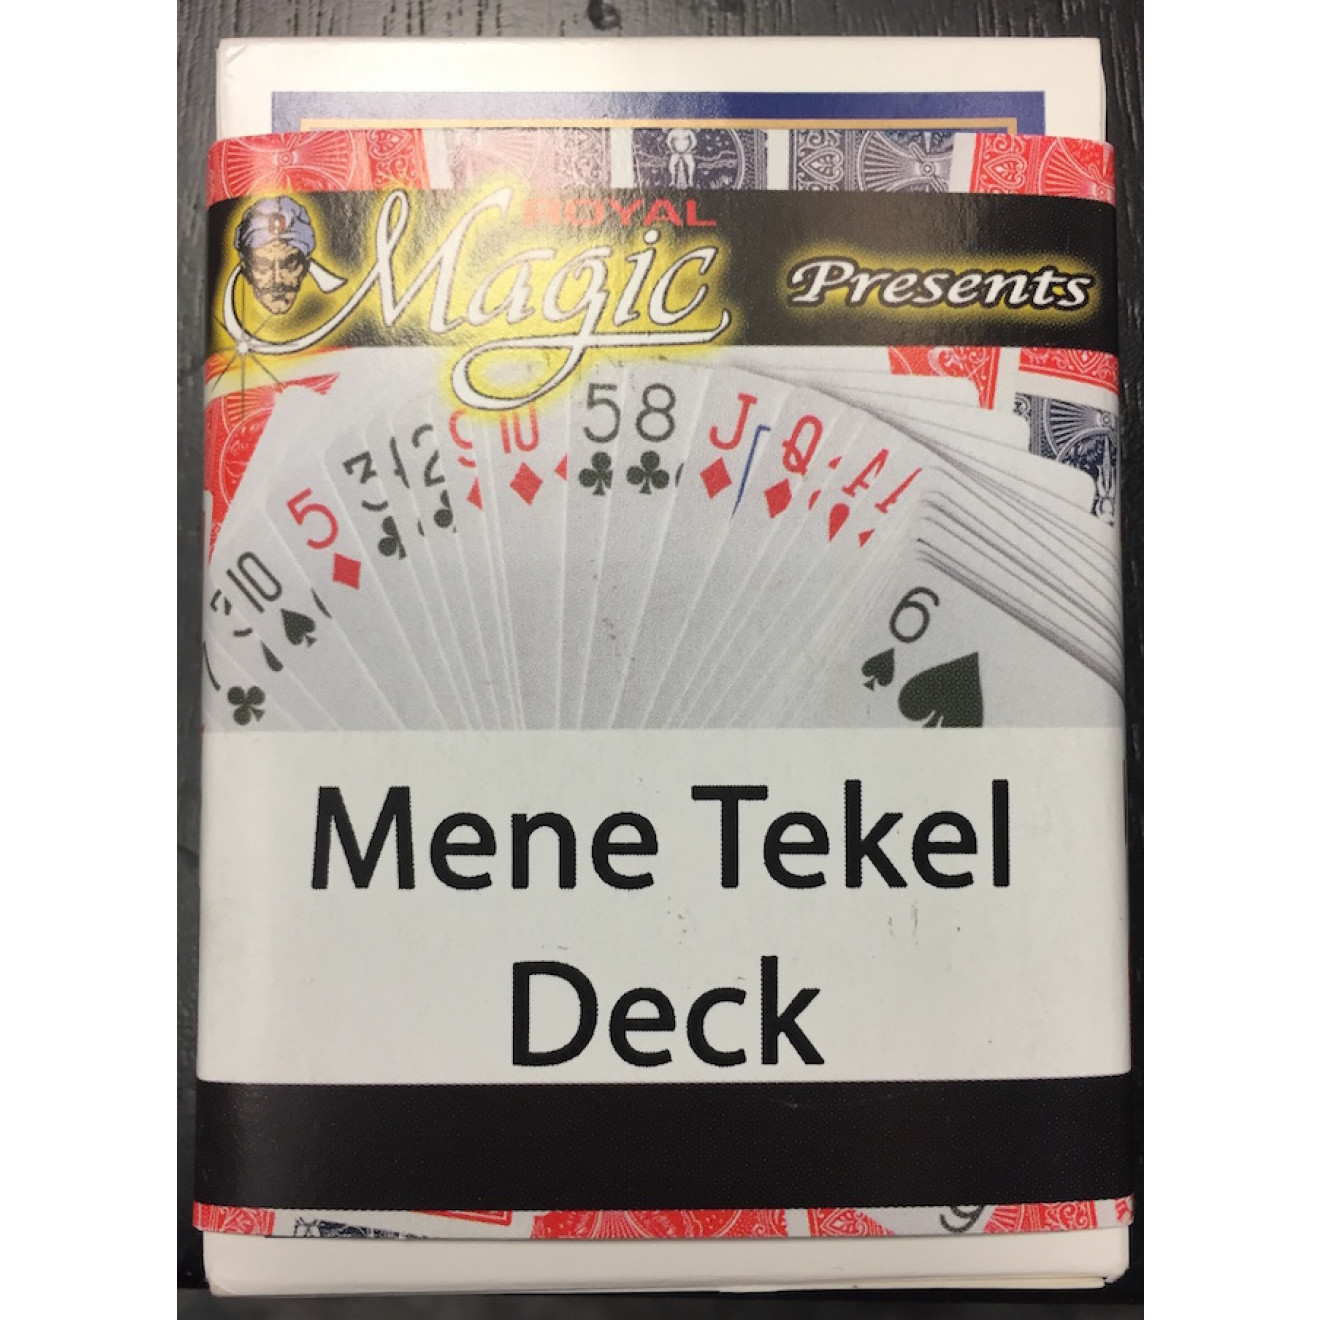 The Mene-Tekel-Deck